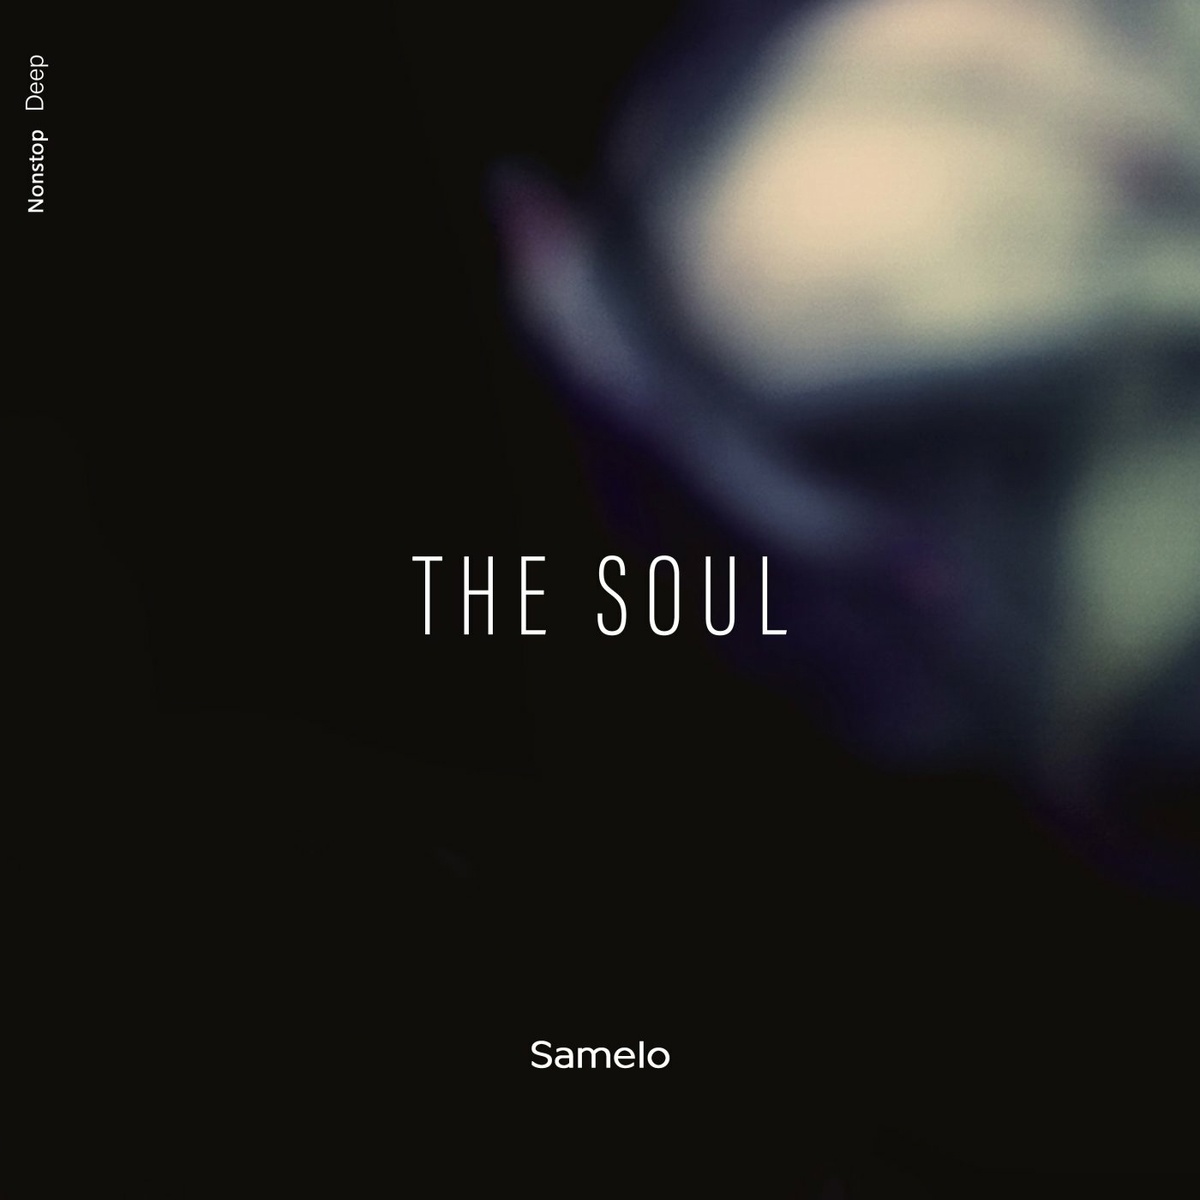 Samelo - The Soul (Original Mix)